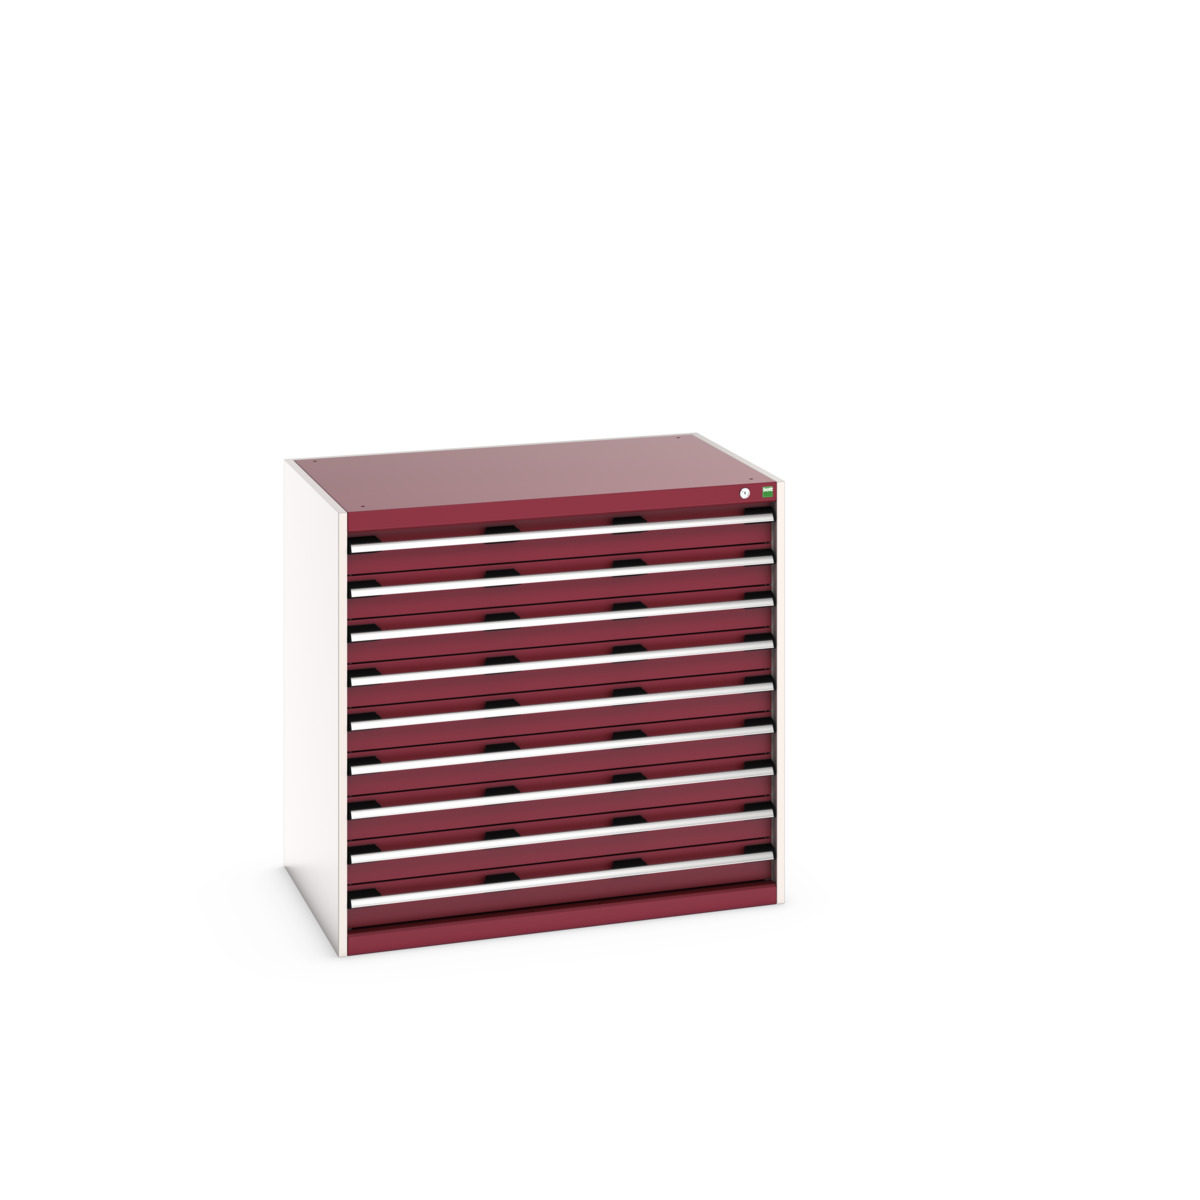 40029027.24V - cubio drawer cabinet